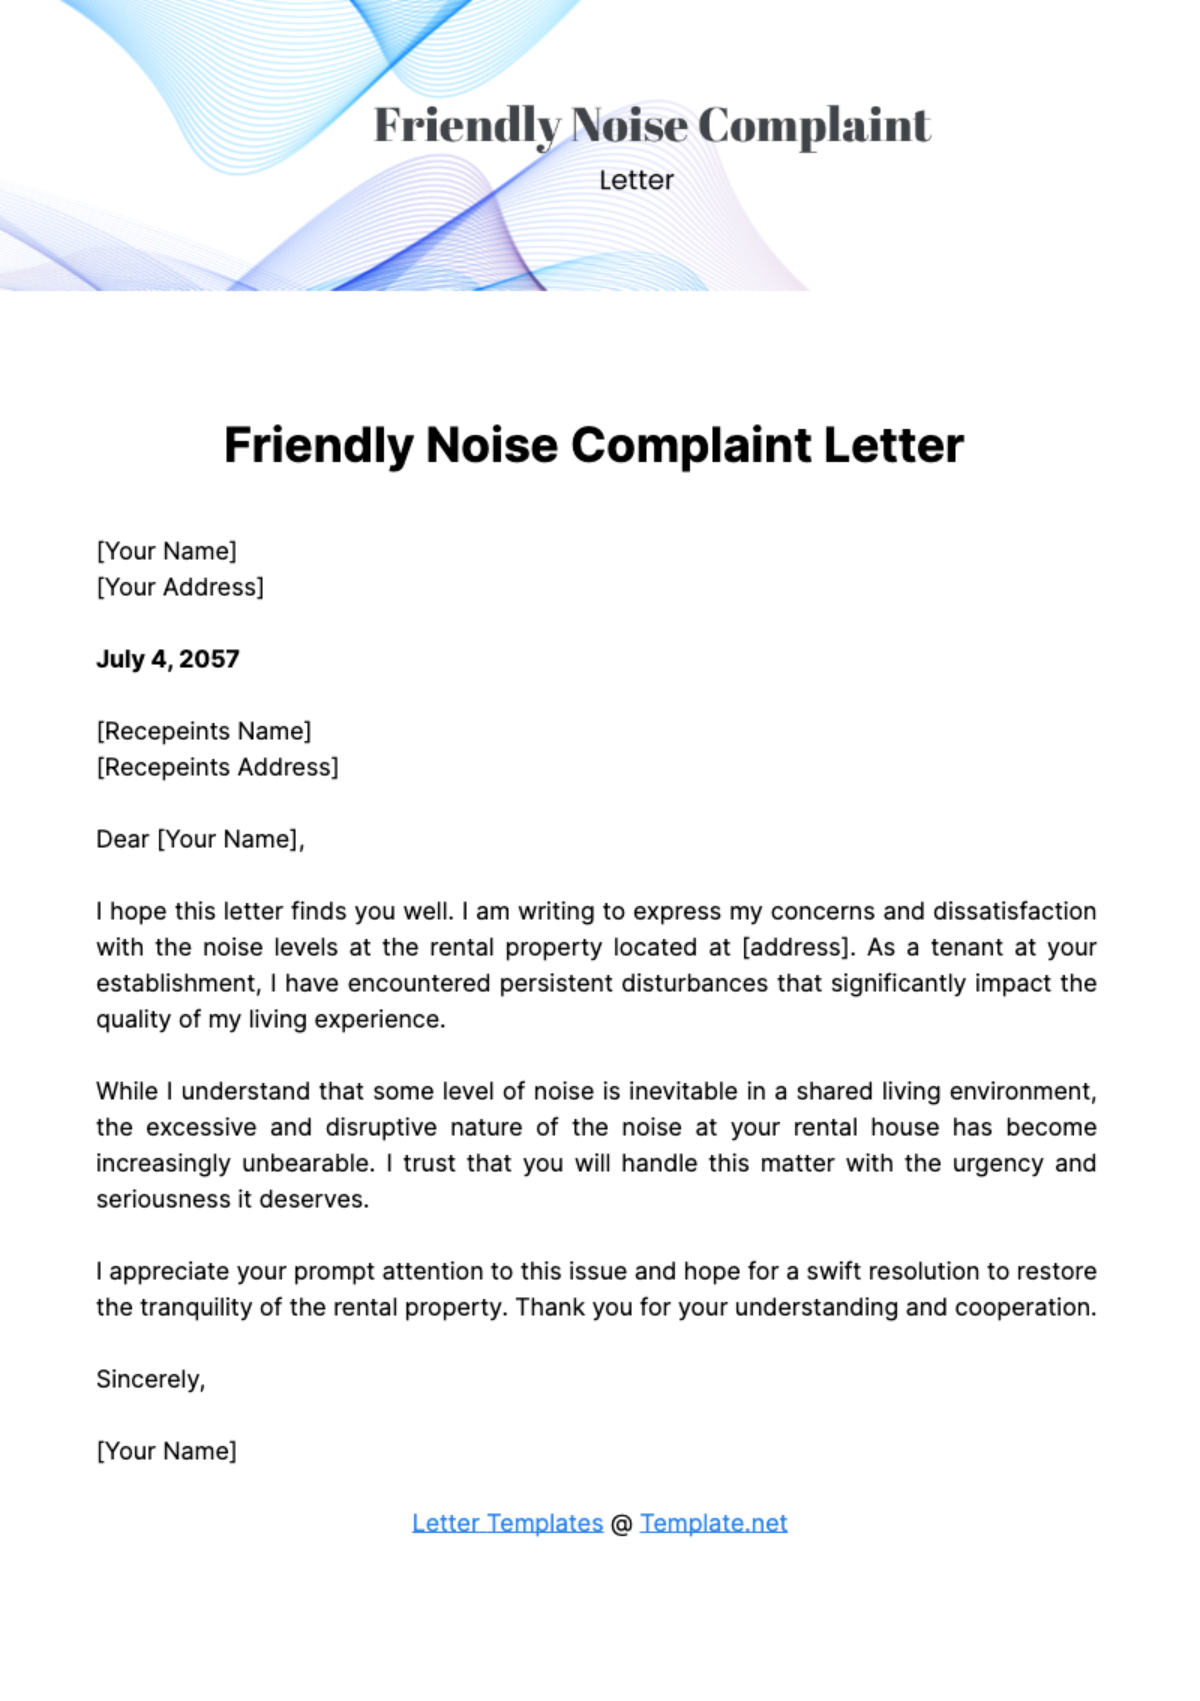 Friendly Noise Complaint Letter Template